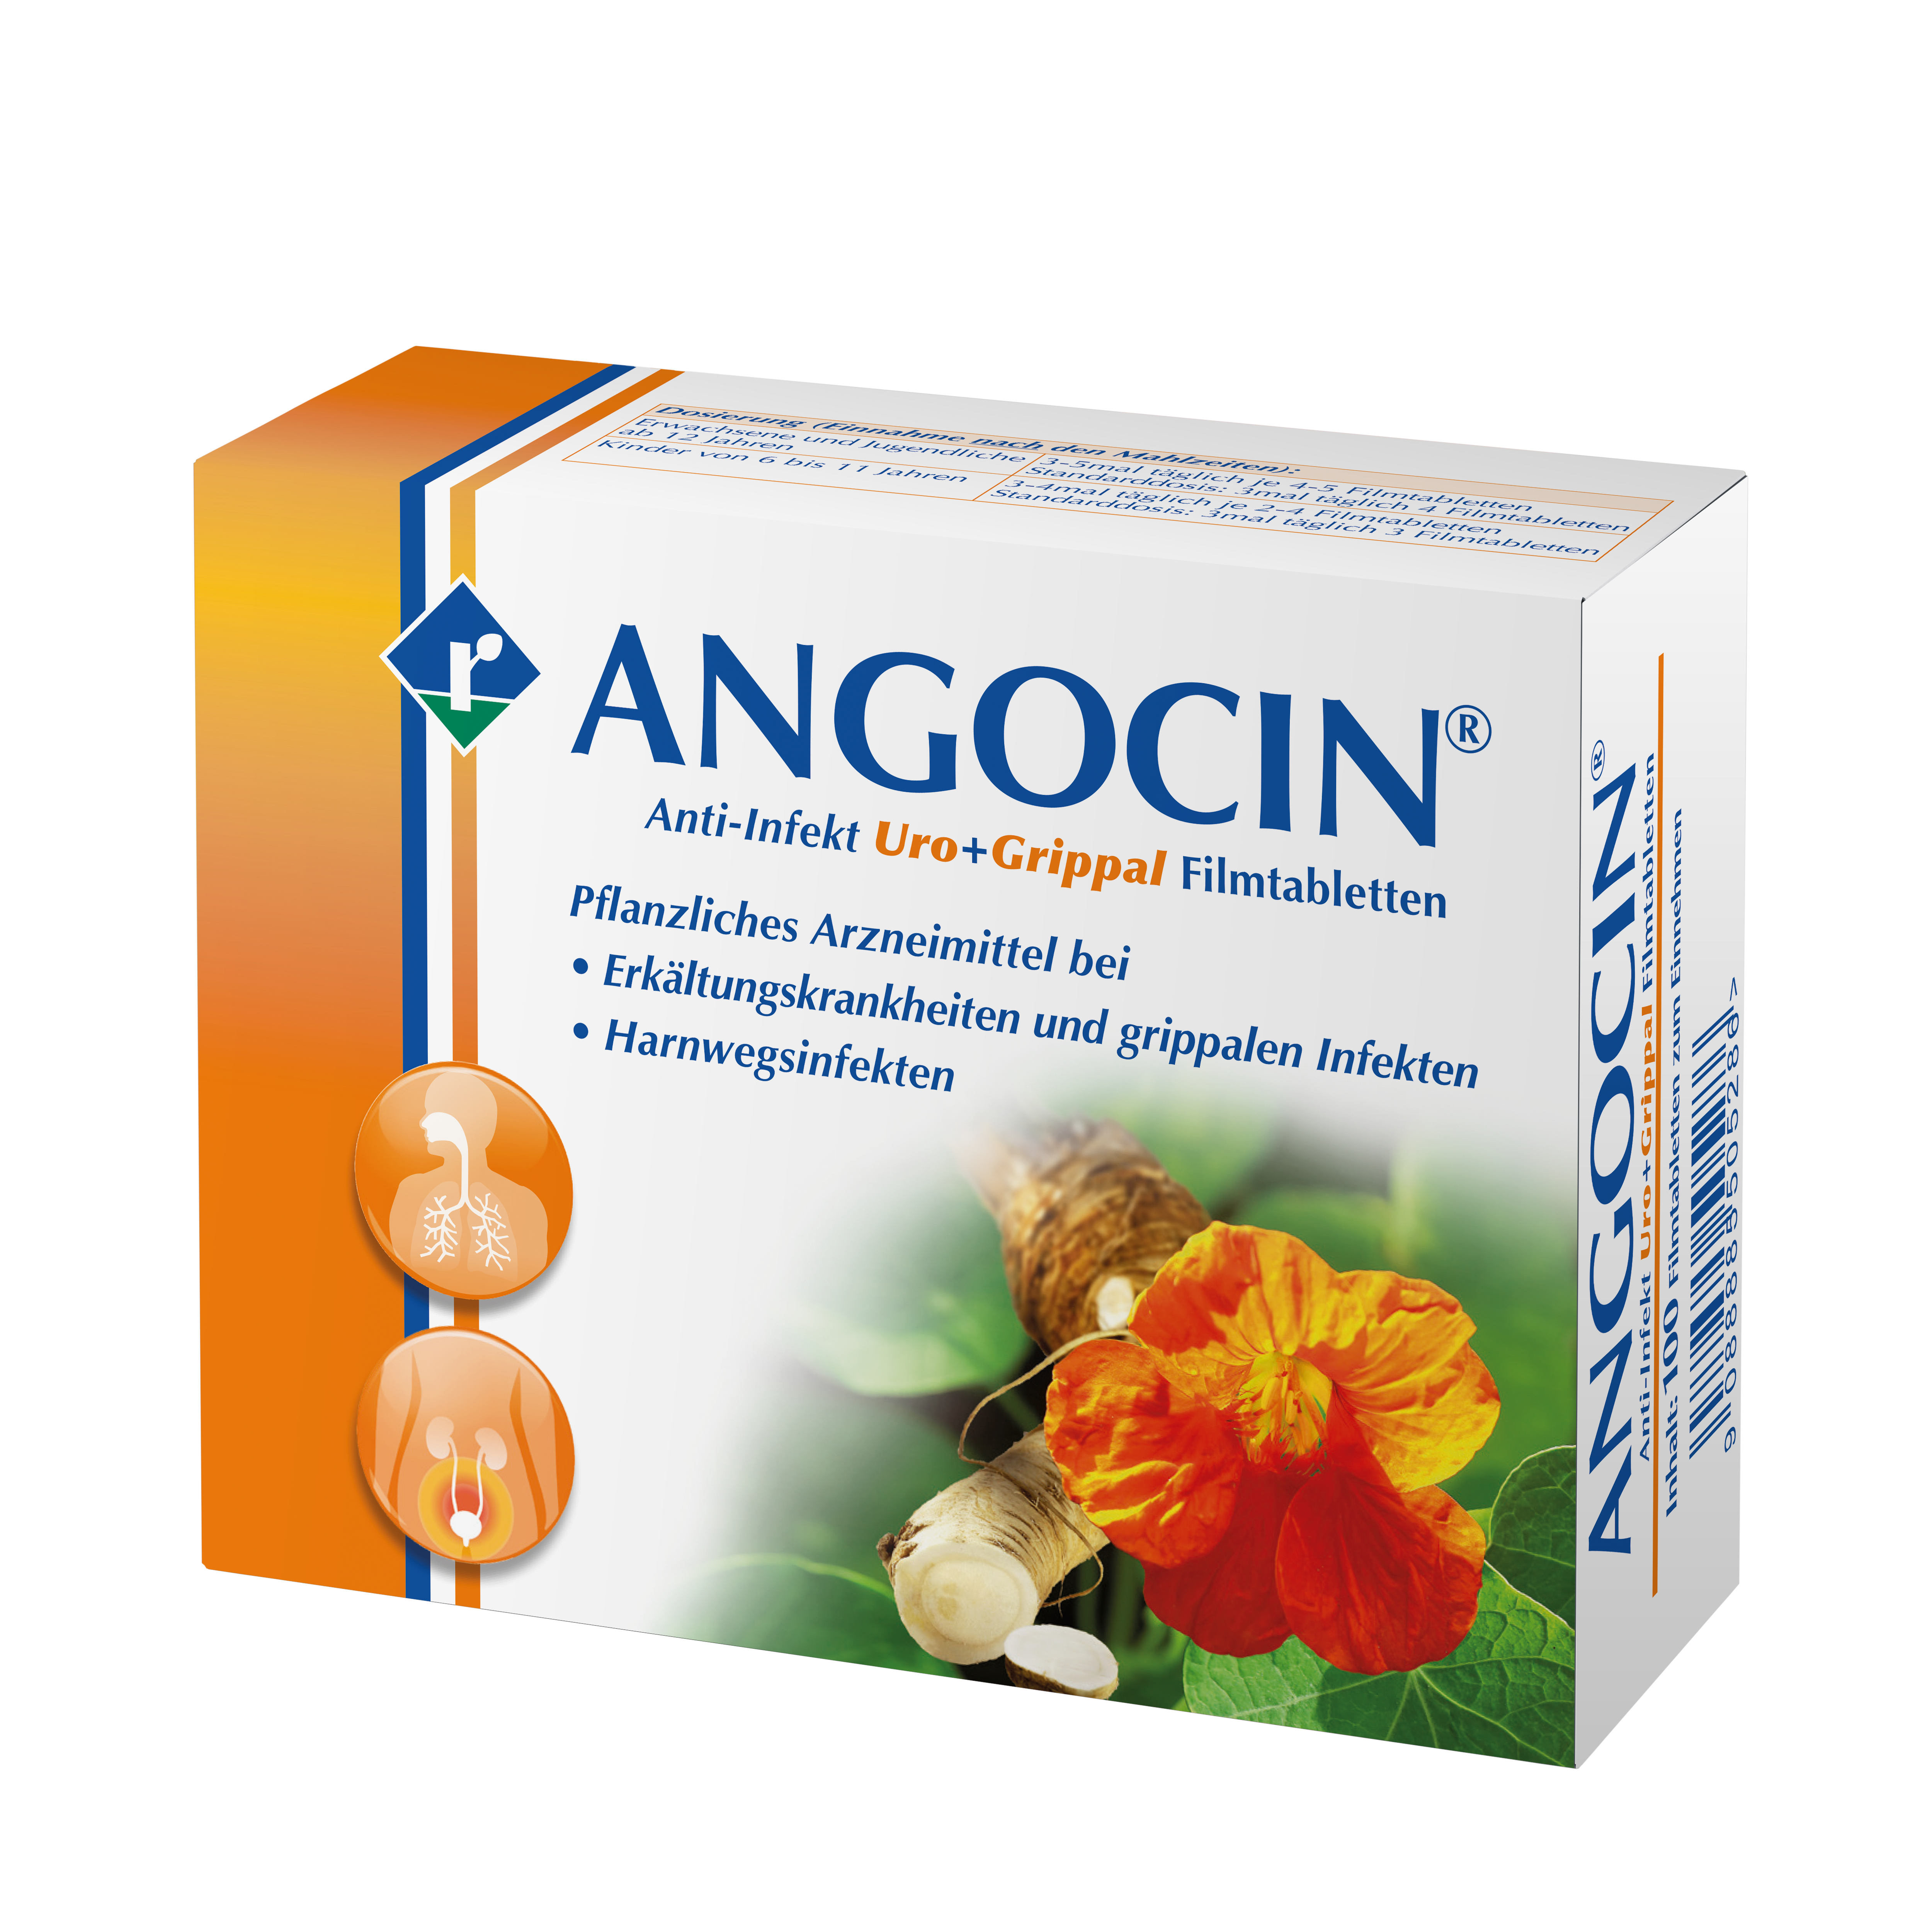 Angocin Anti-Infekt Uro+Grippal - Filmtabletten